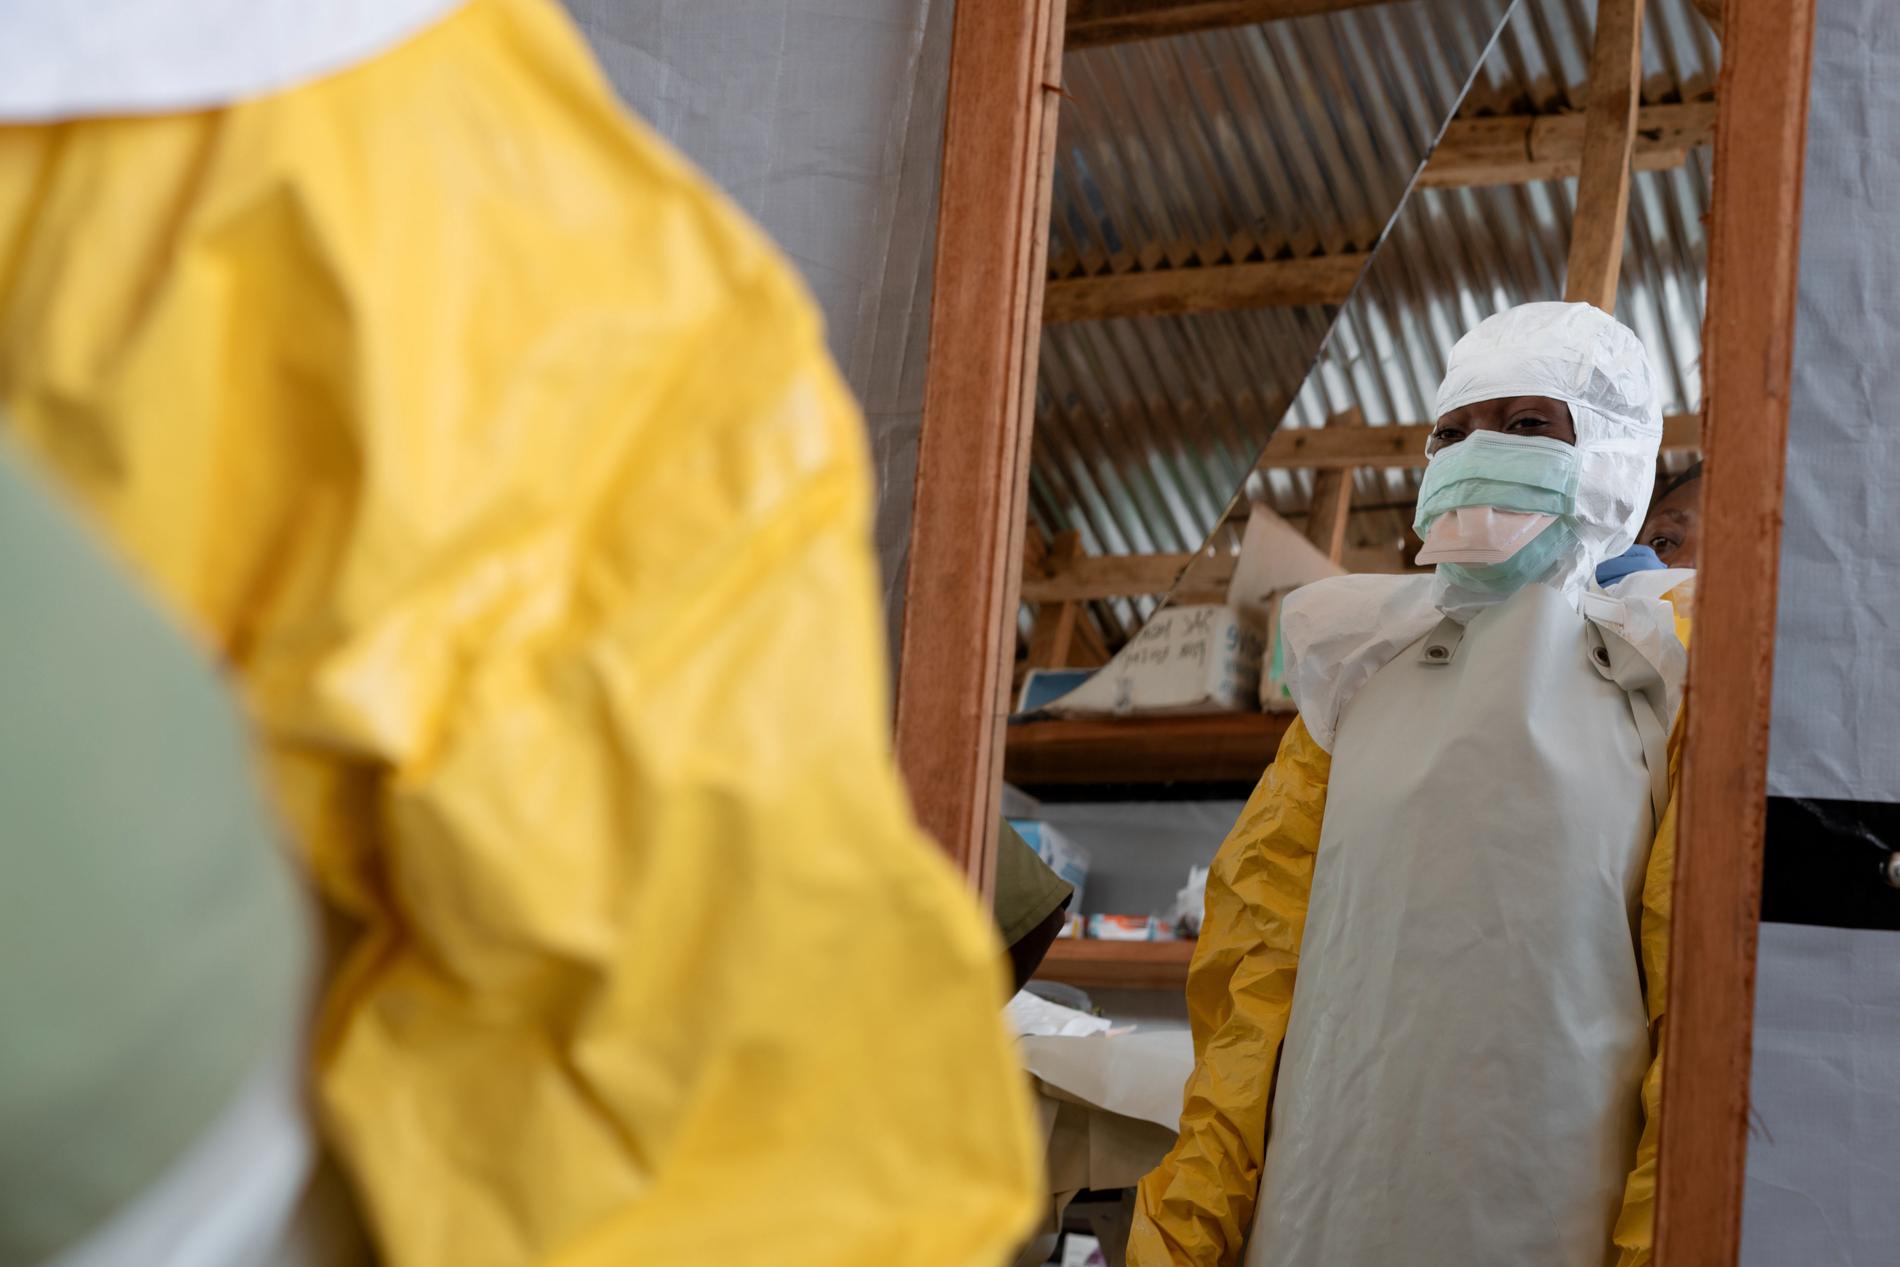 Skyddsutrustningen bärs av sjukvårdspersonal som möter ebolapatienter eller de som misstänkts vara smittade med den farliga sjukdomen. Arkivbild.